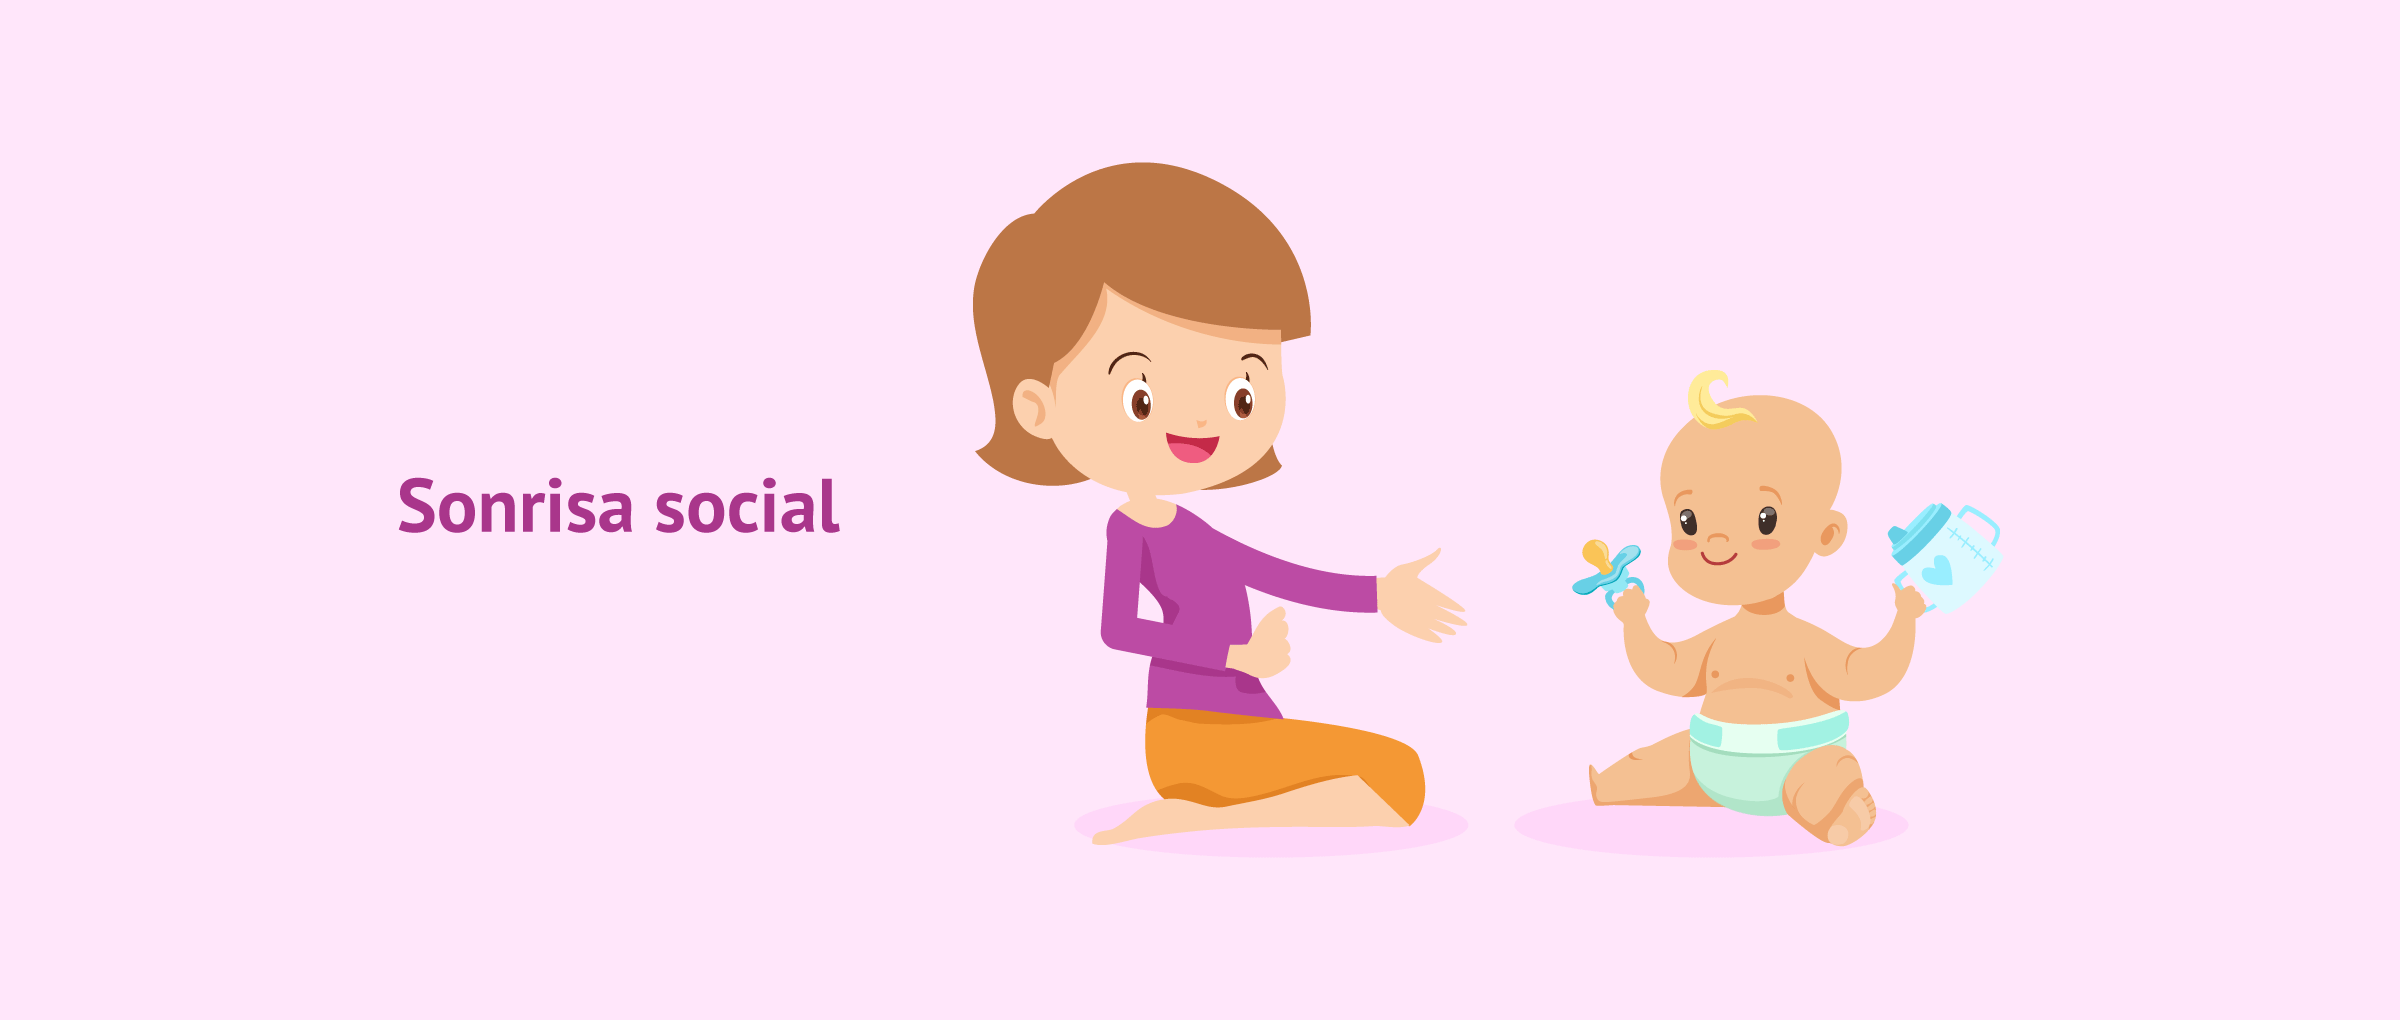 ¿Qué es la sonrisa social del bebé?